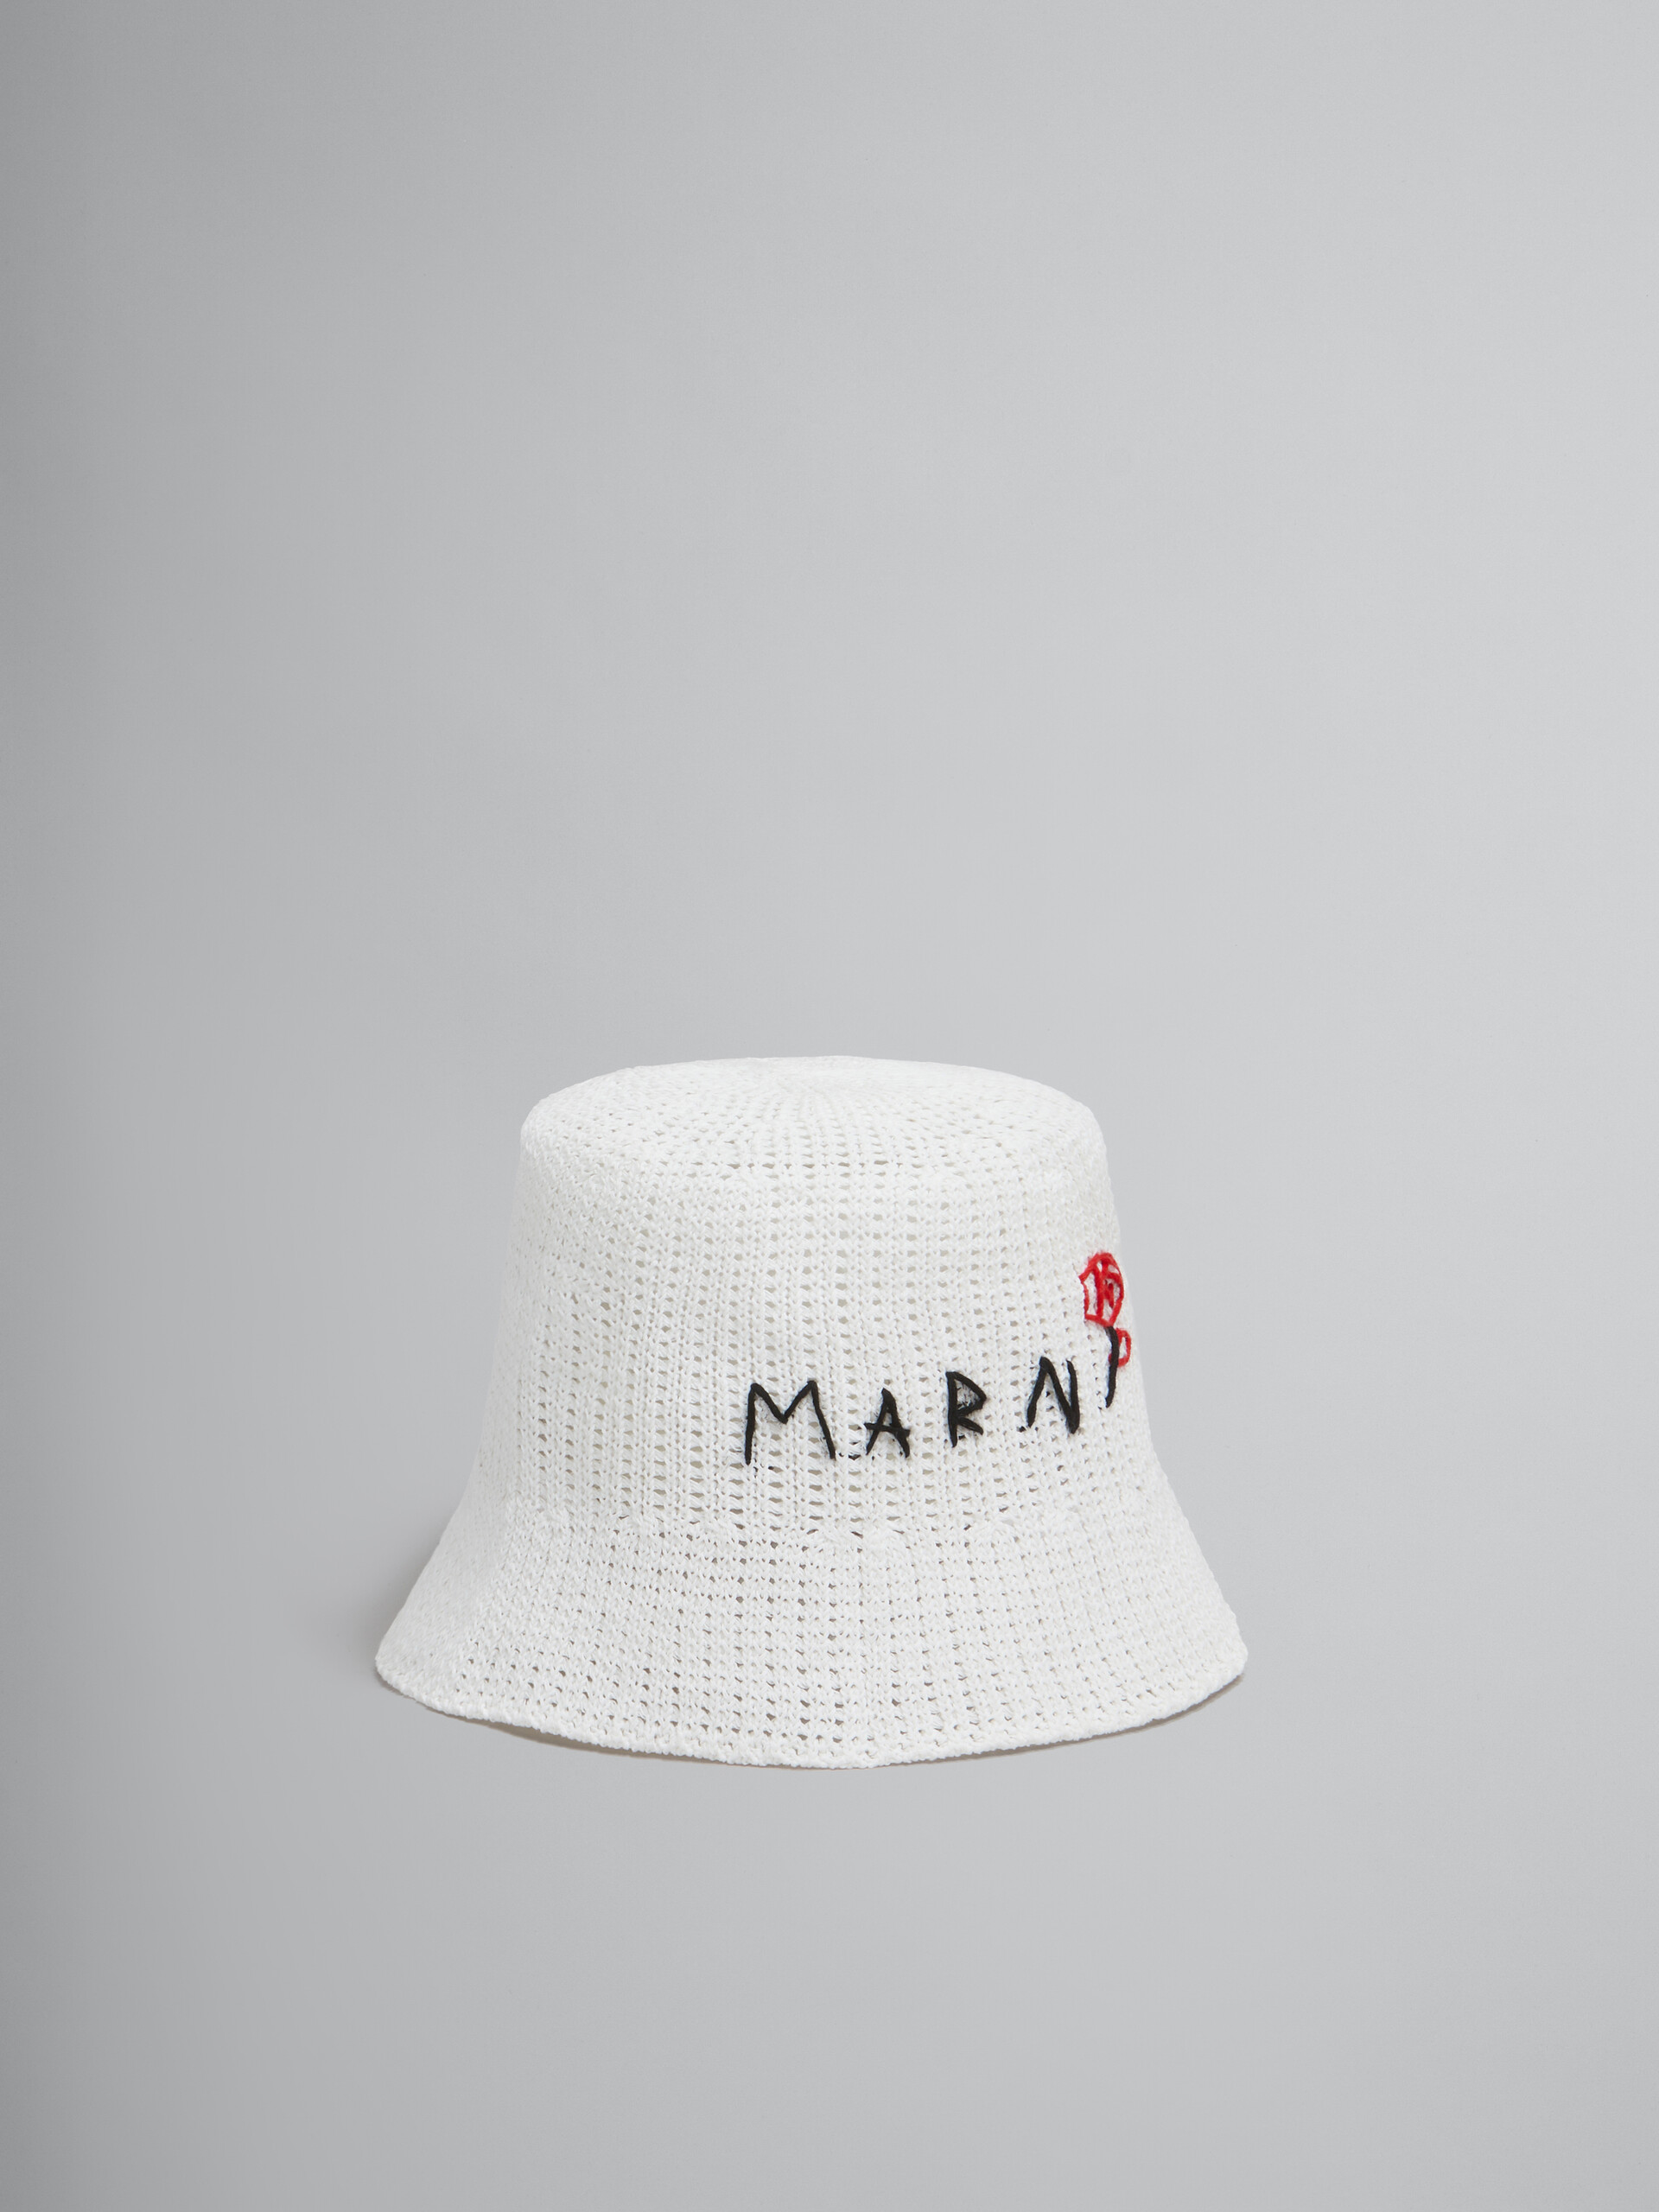 Bob en coton blanc réalisé au crochet avec effet raccommodé Marni - Chapeau - Image 1